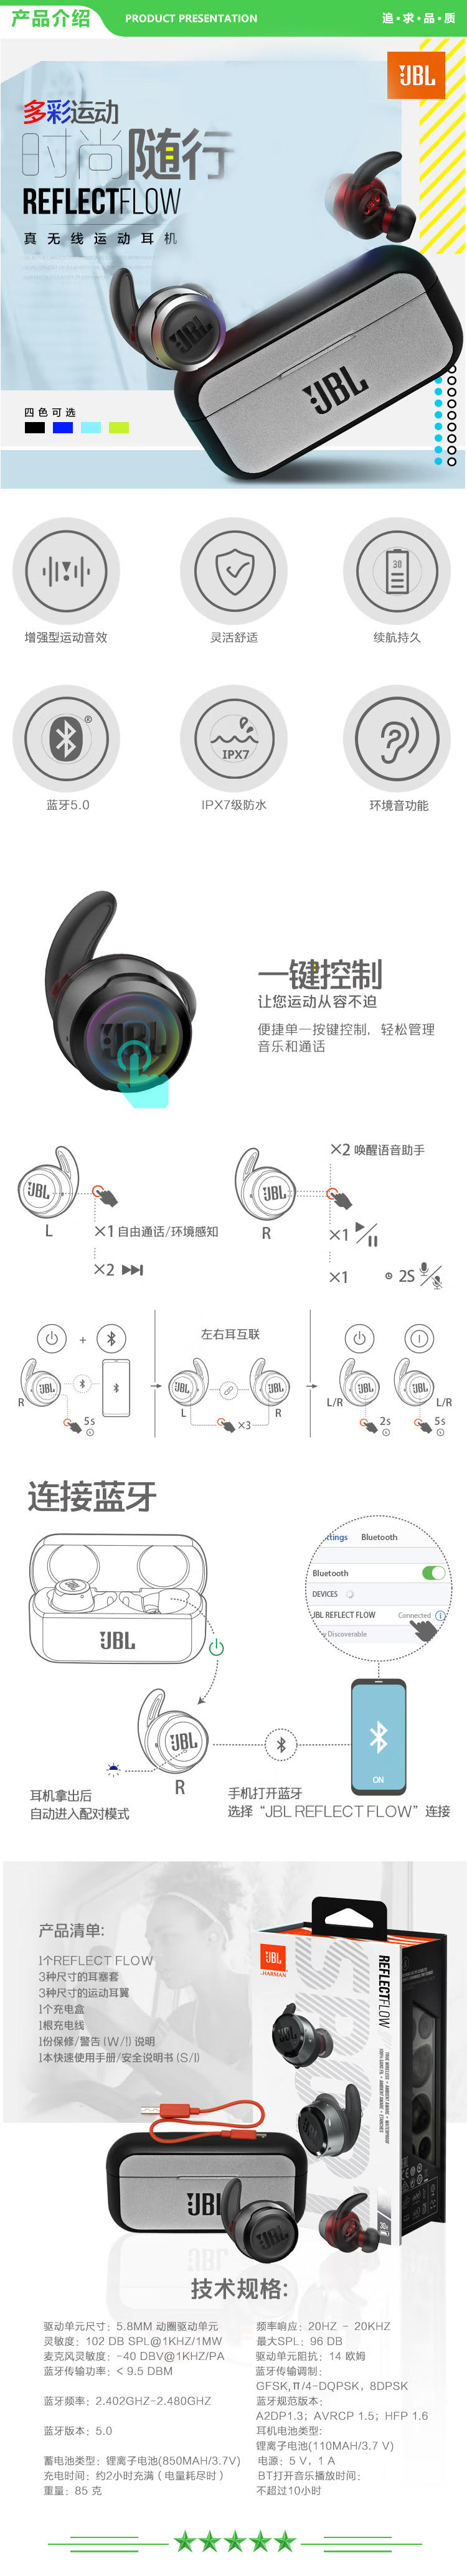 JBL FLOW黄色 无线运动耳机 蓝牙耳机 真无线耳机 防水防汗 苹果华为小米安卓游戏通用耳机耳麦 .jpg